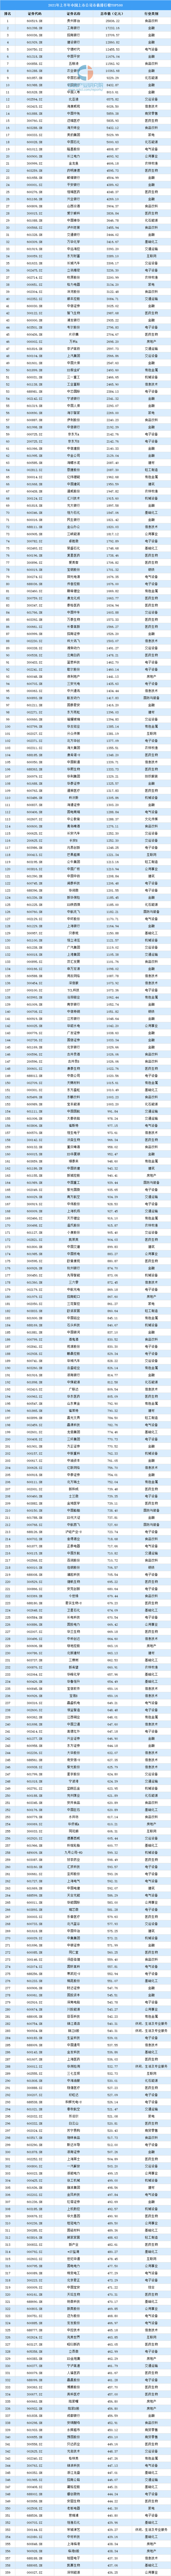 中国企业市值排行榜_2021年上半年中国上市企业市值排行榜TOP500(图)